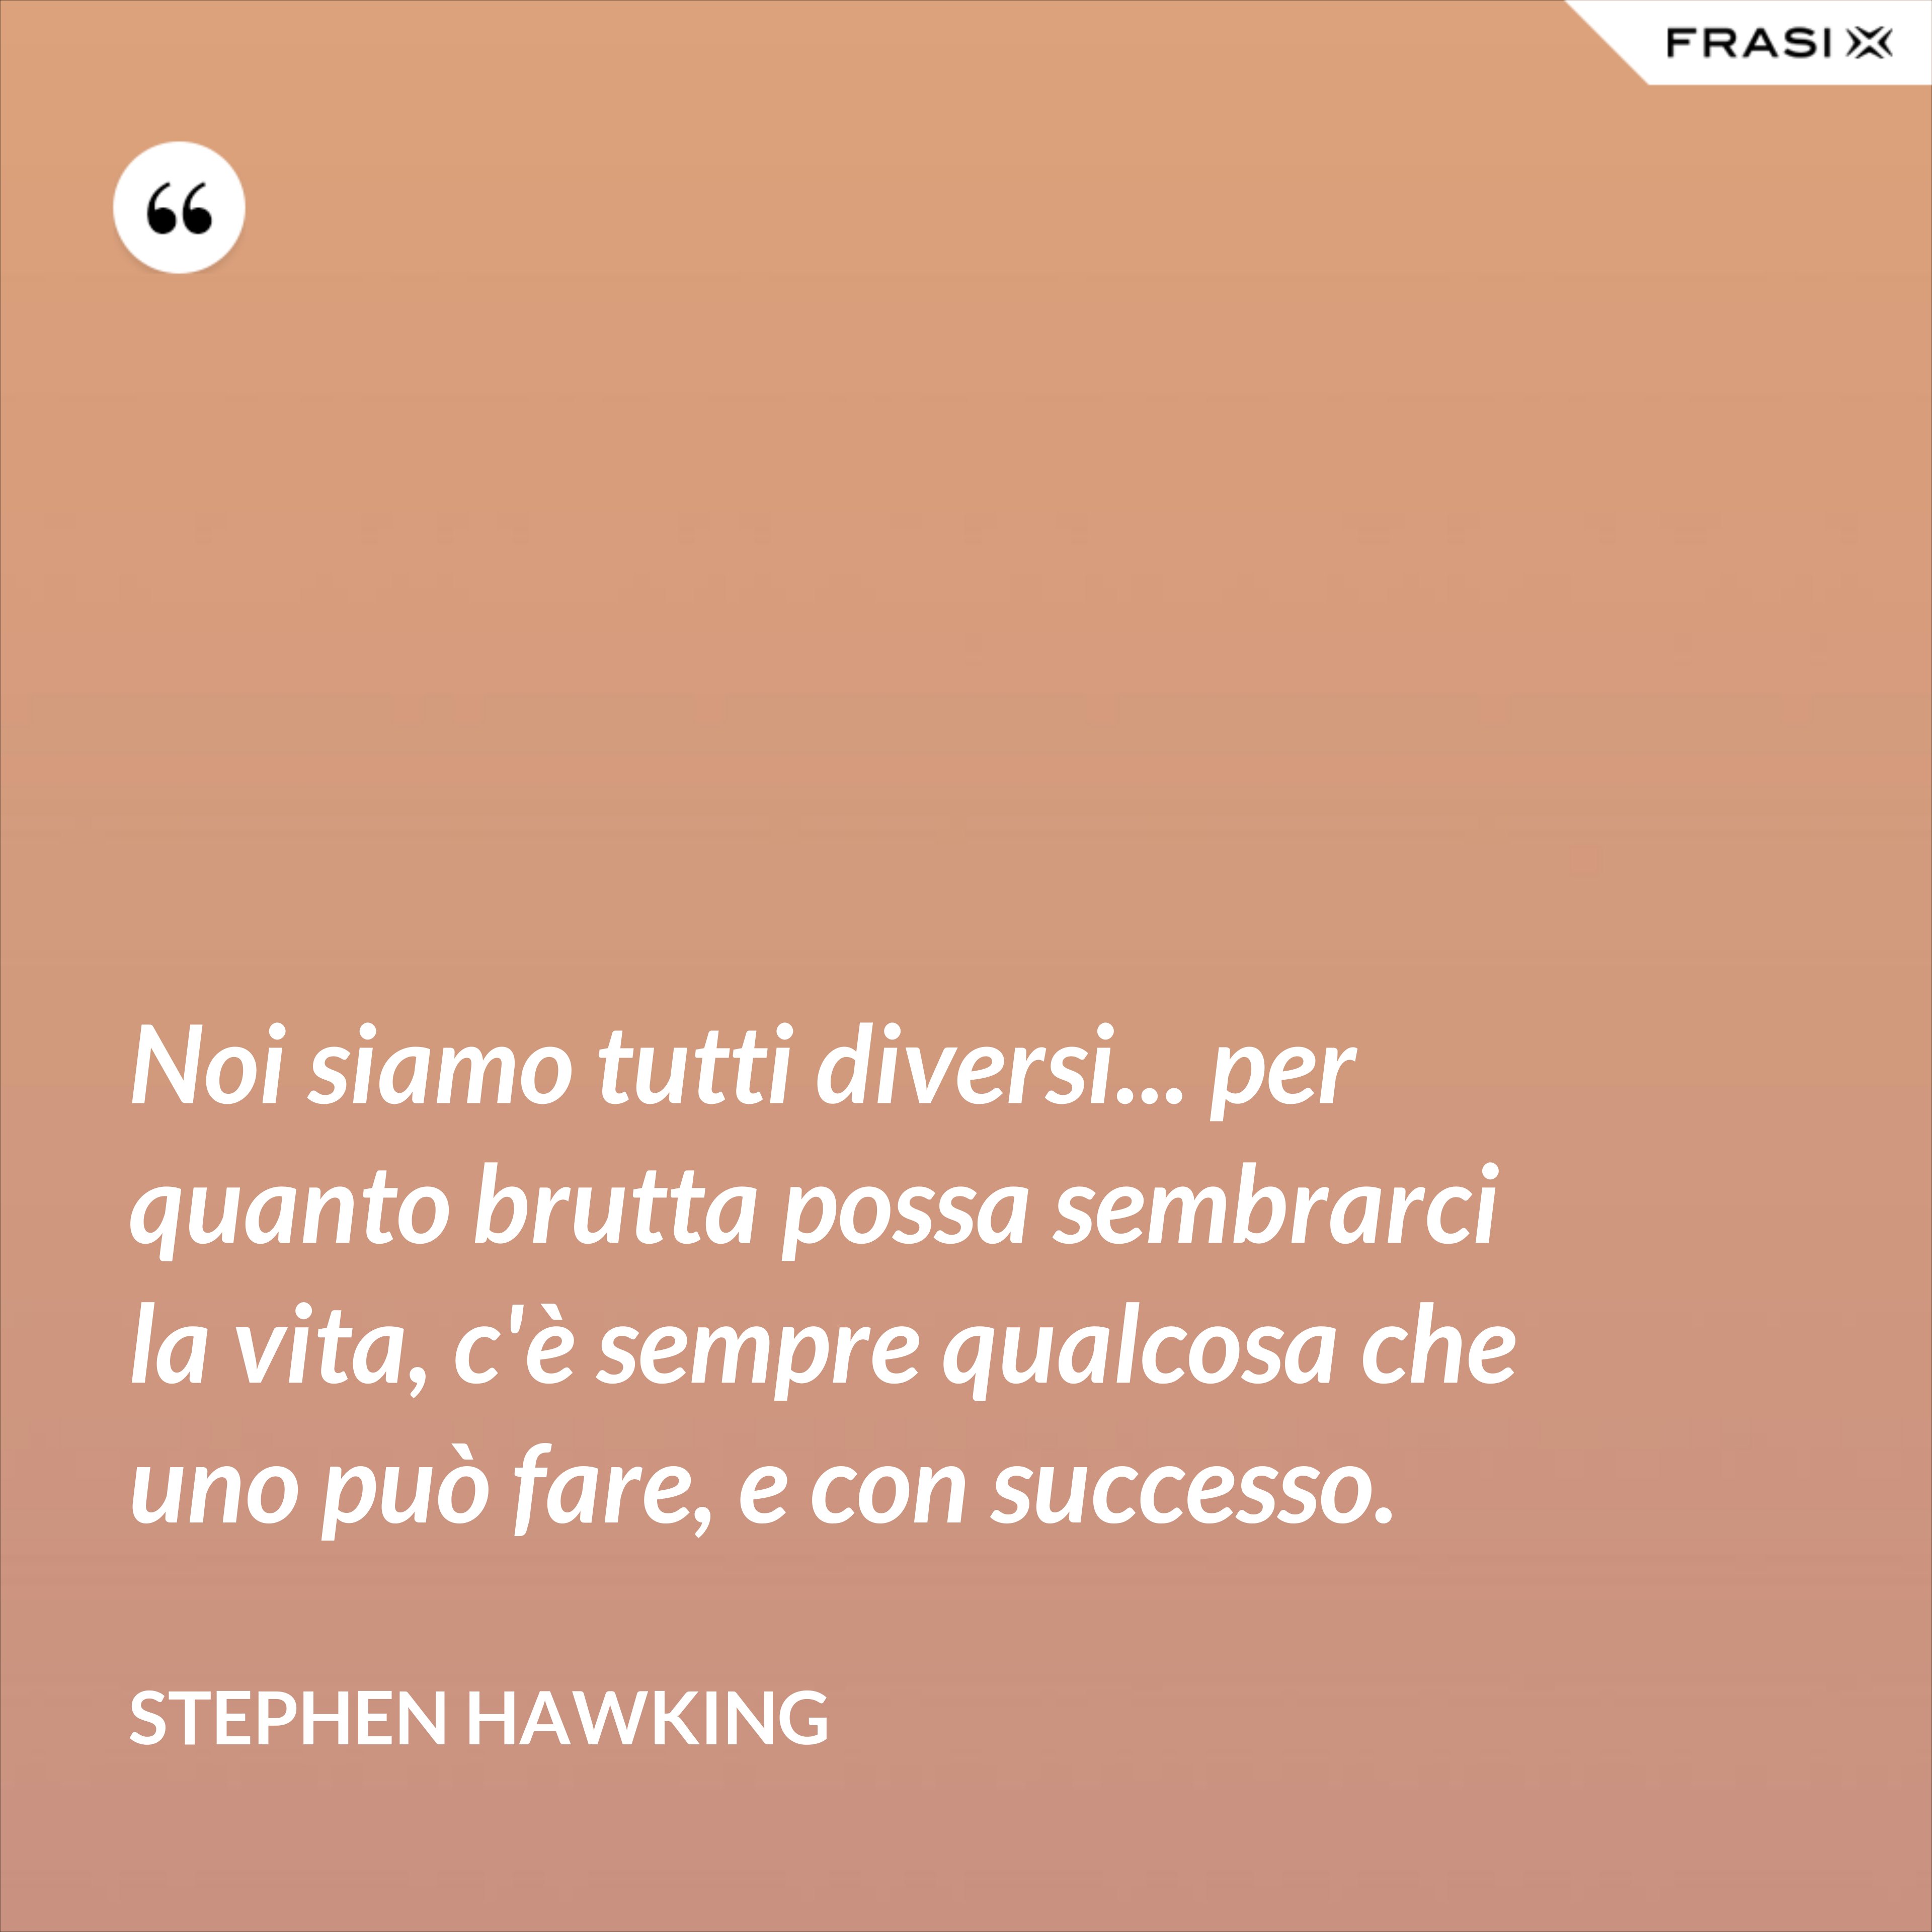 Noi siamo tutti diversi... per quanto brutta possa sembrarci la vita, c'è sempre qualcosa che uno può fare, e con successo. - Stephen Hawking